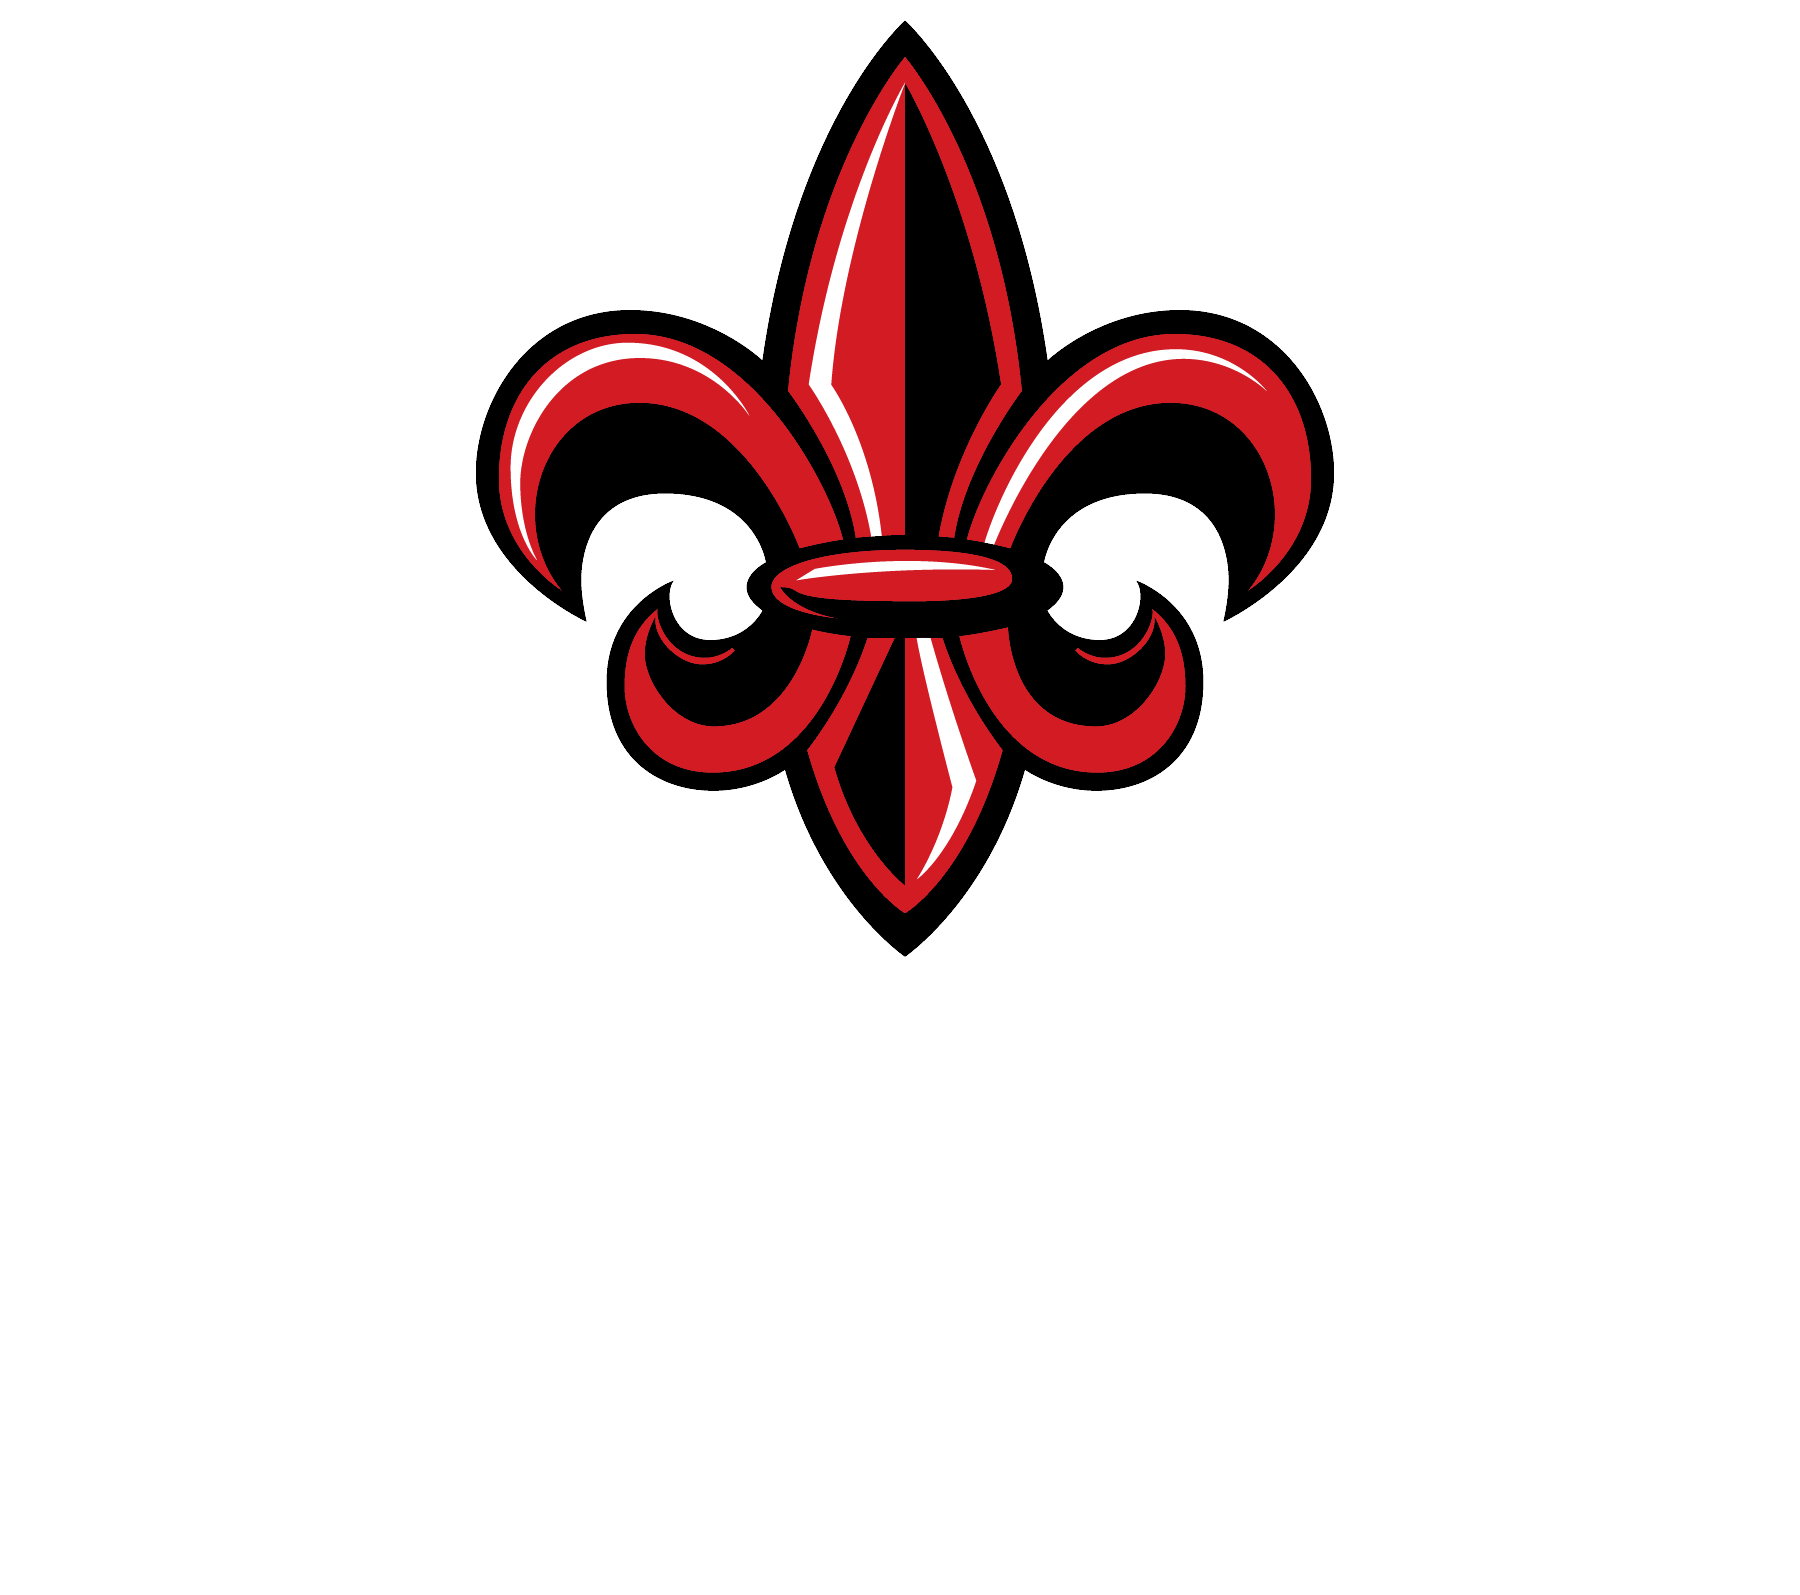 ULL logo